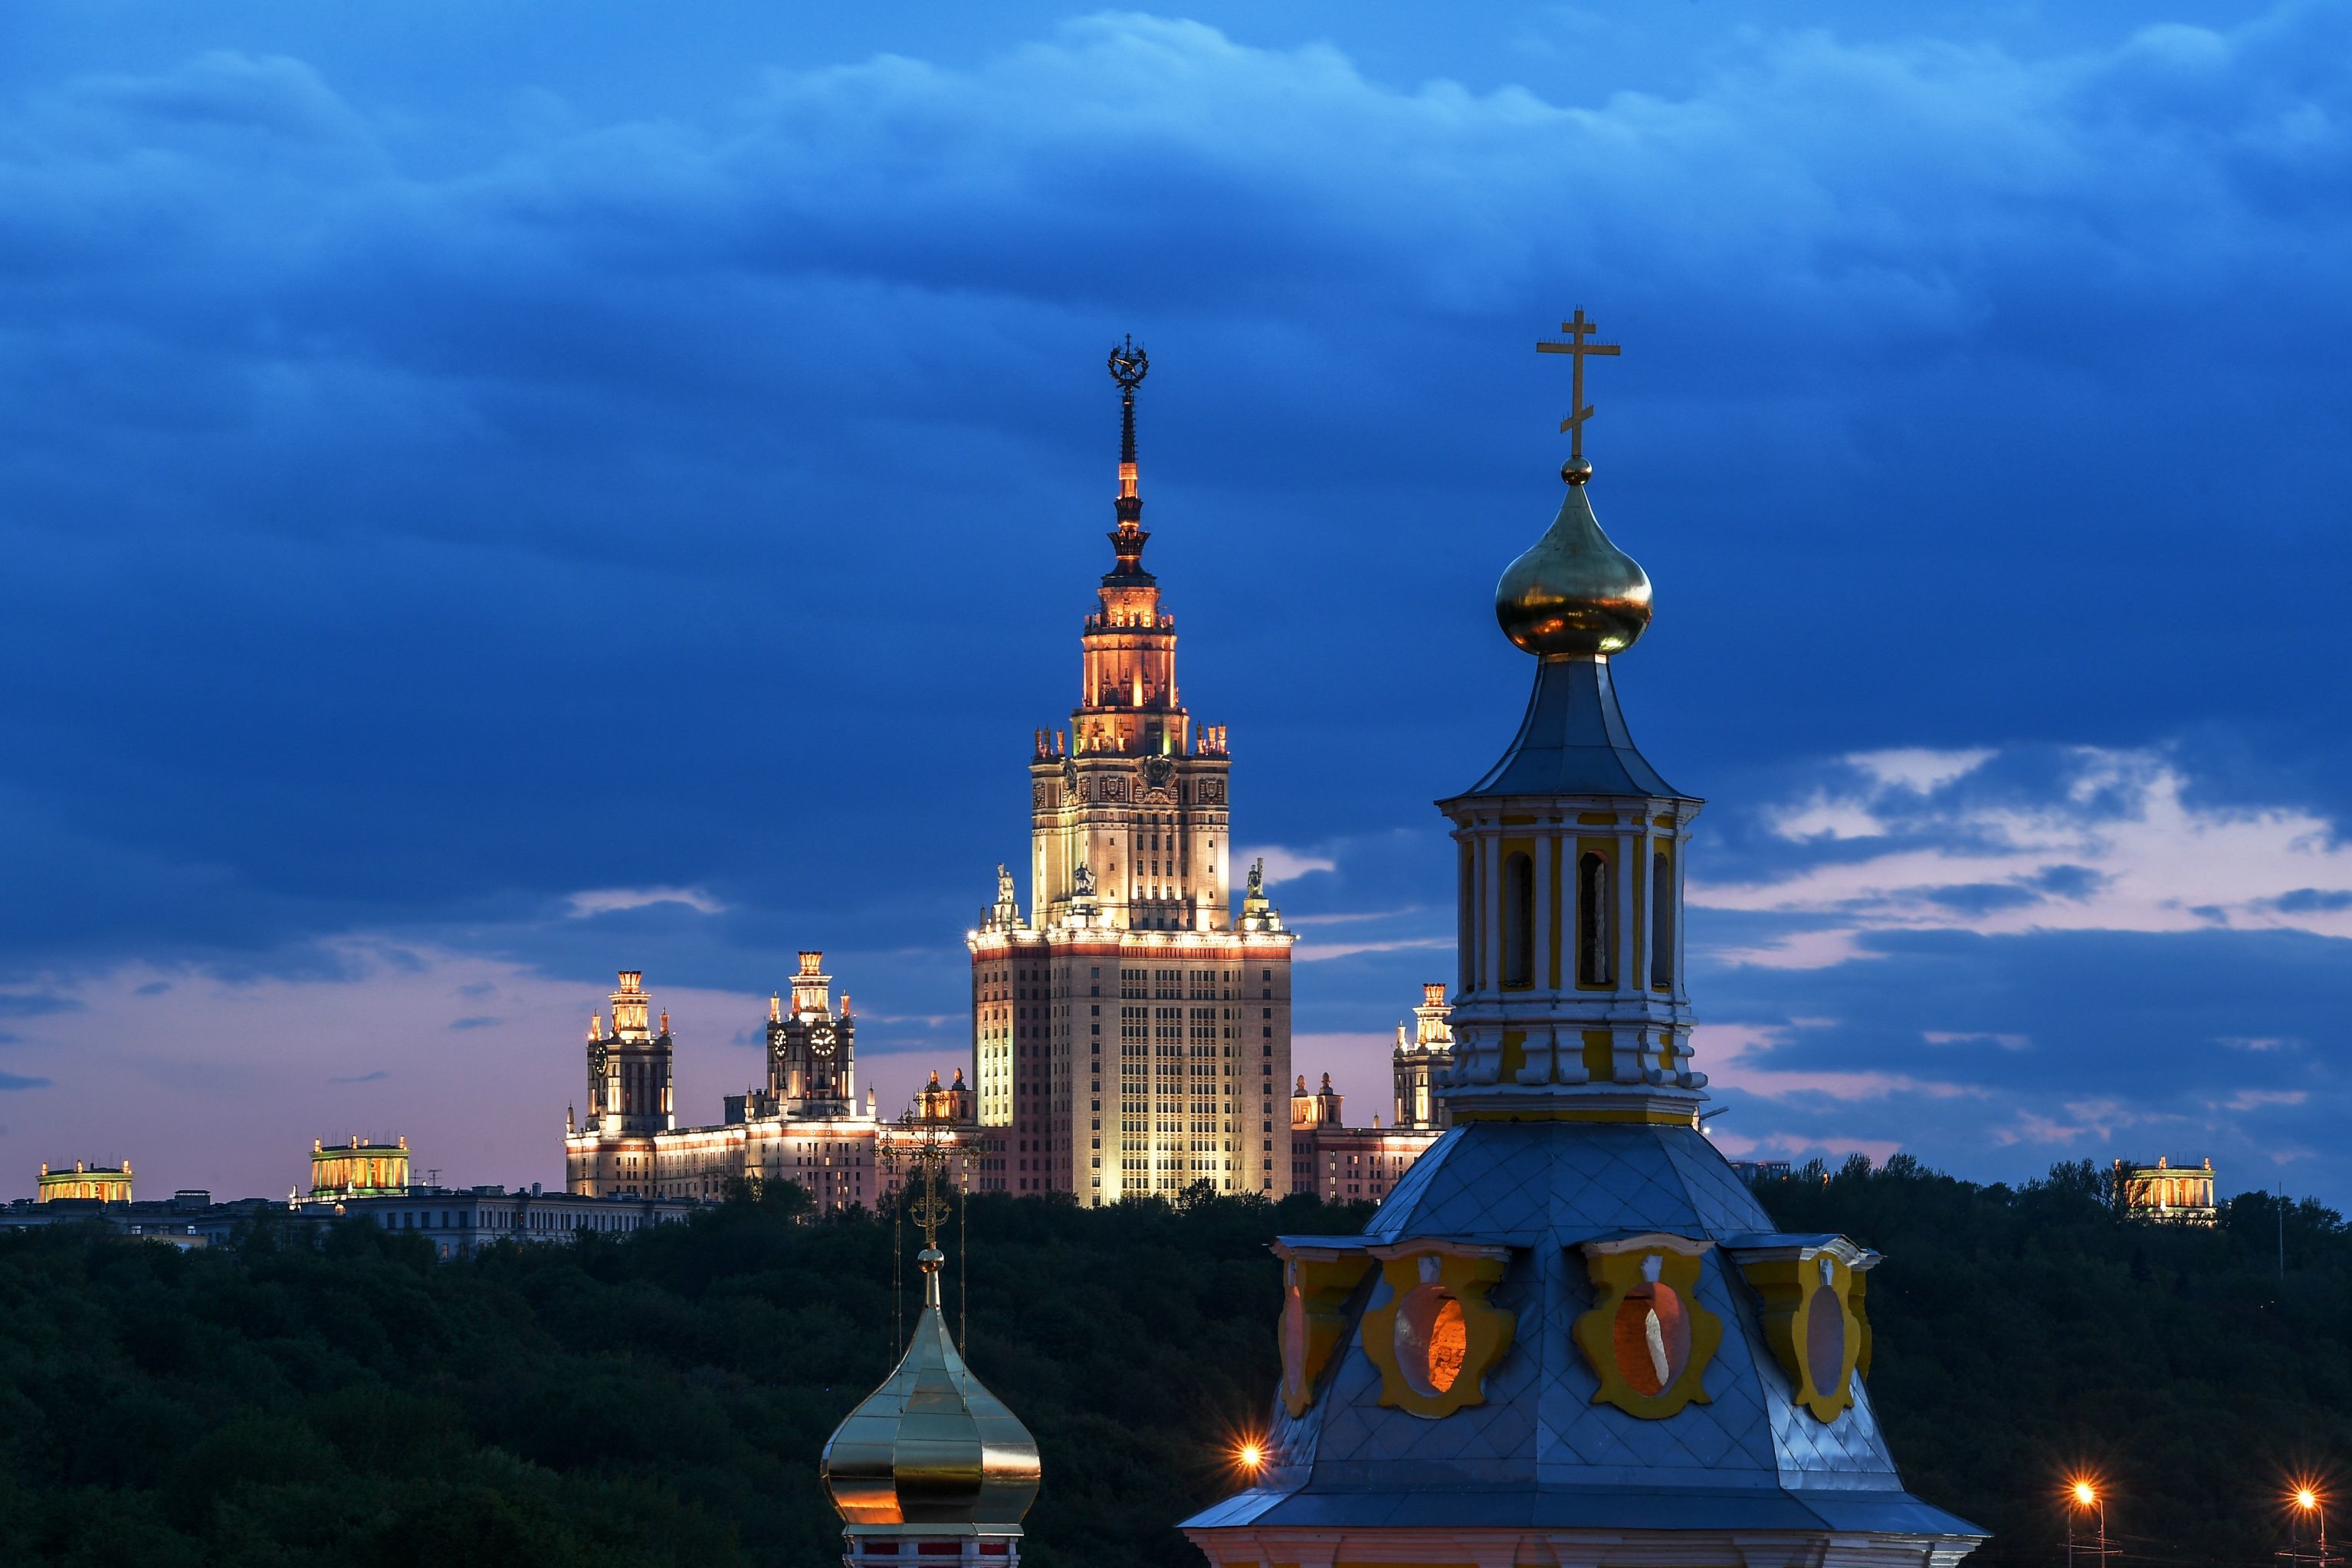 Купол Андреевского монастыря в Москве и здание МГУ